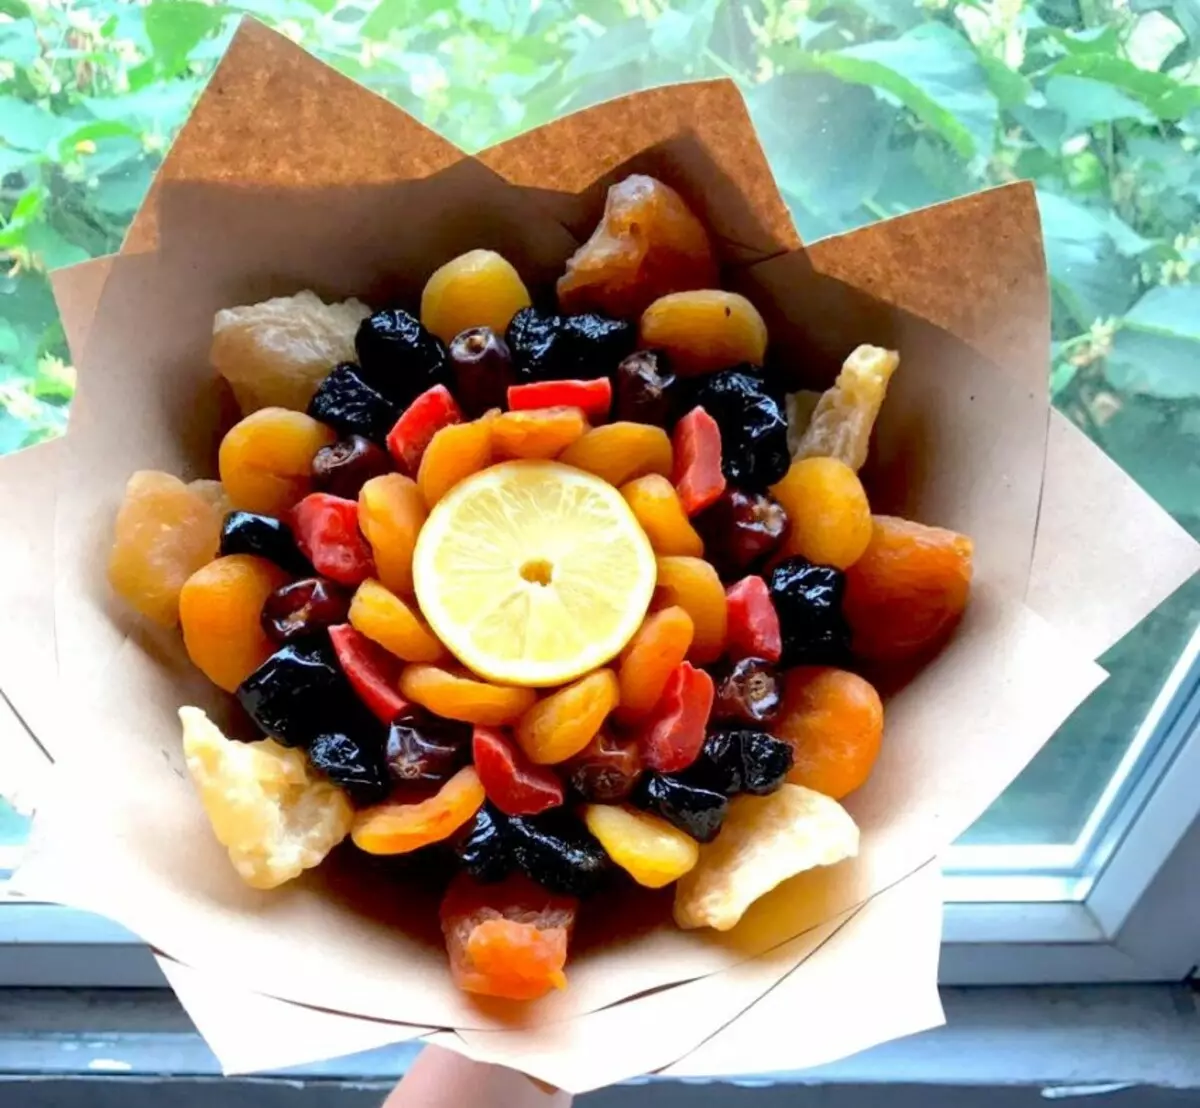 Dhurata nga fruta dhe arra të thata: Si të paketoni bukur një sërë frutash të thata dhe arra? Si t'i vendosni ato bukur në një pjatë? 7682_12